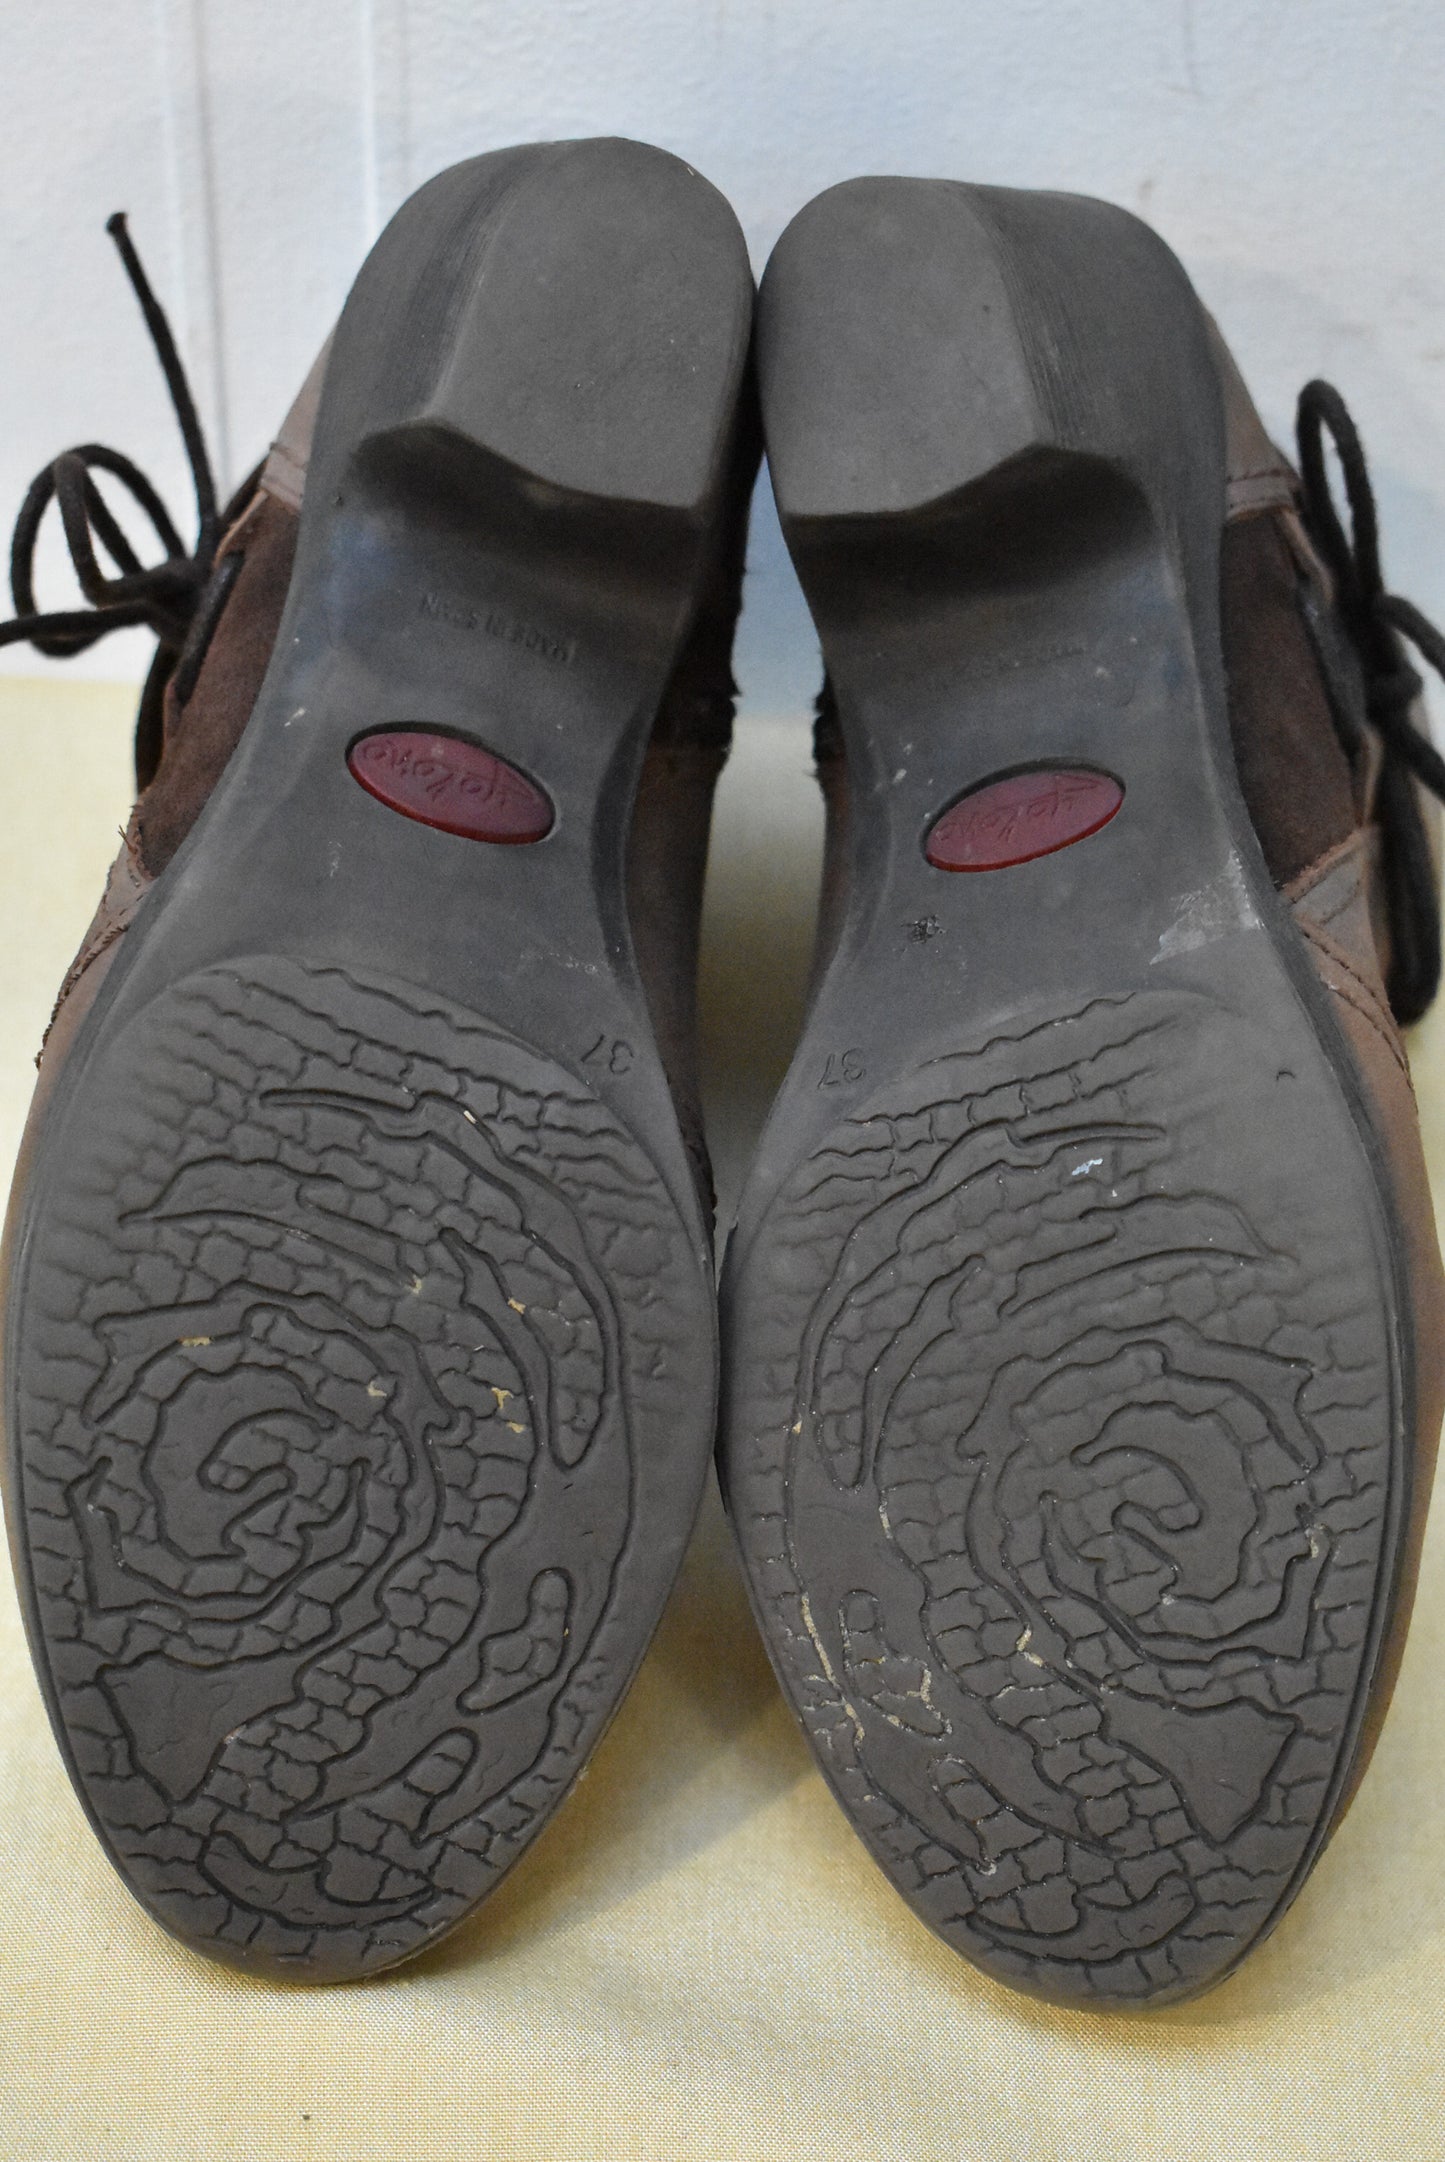 Yo Kono leather ankle boots, 37